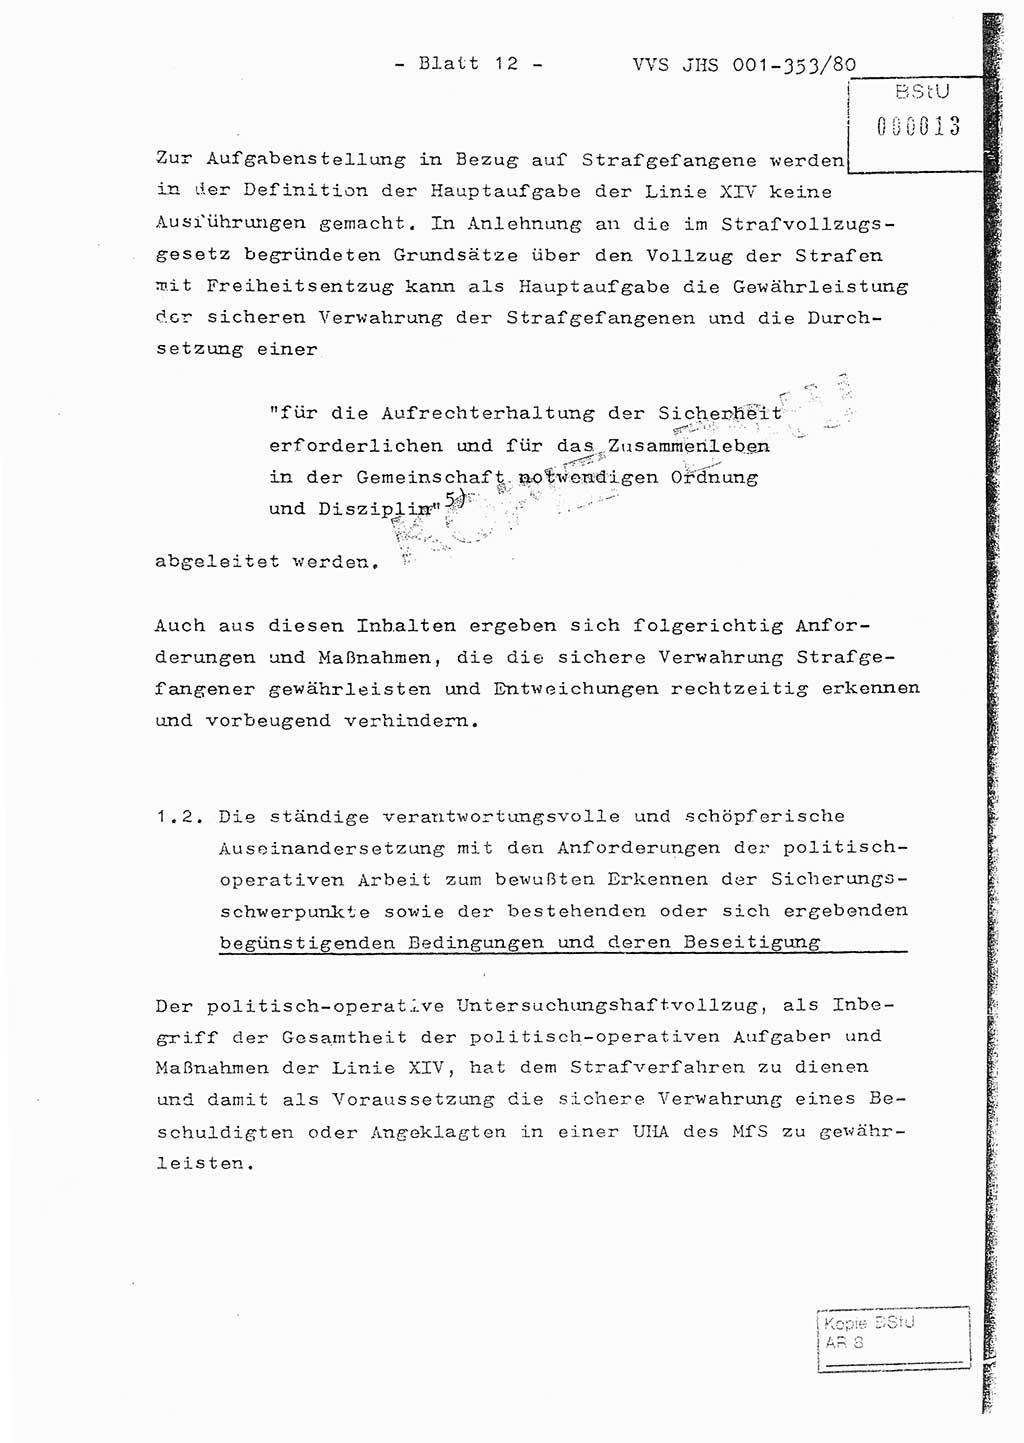 Diplomarbeit Hauptmann Joachim Klaumünzner (Abt. ⅩⅣ), Ministerium für Staatssicherheit (MfS) [Deutsche Demokratische Republik (DDR)], Juristische Hochschule (JHS), Vertrauliche Verschlußsache (VVS) o001-353/80, Potsdam 1980, Blatt 12 (Dipl.-Arb. MfS DDR JHS VVS o001-353/80 1980, Bl. 12)